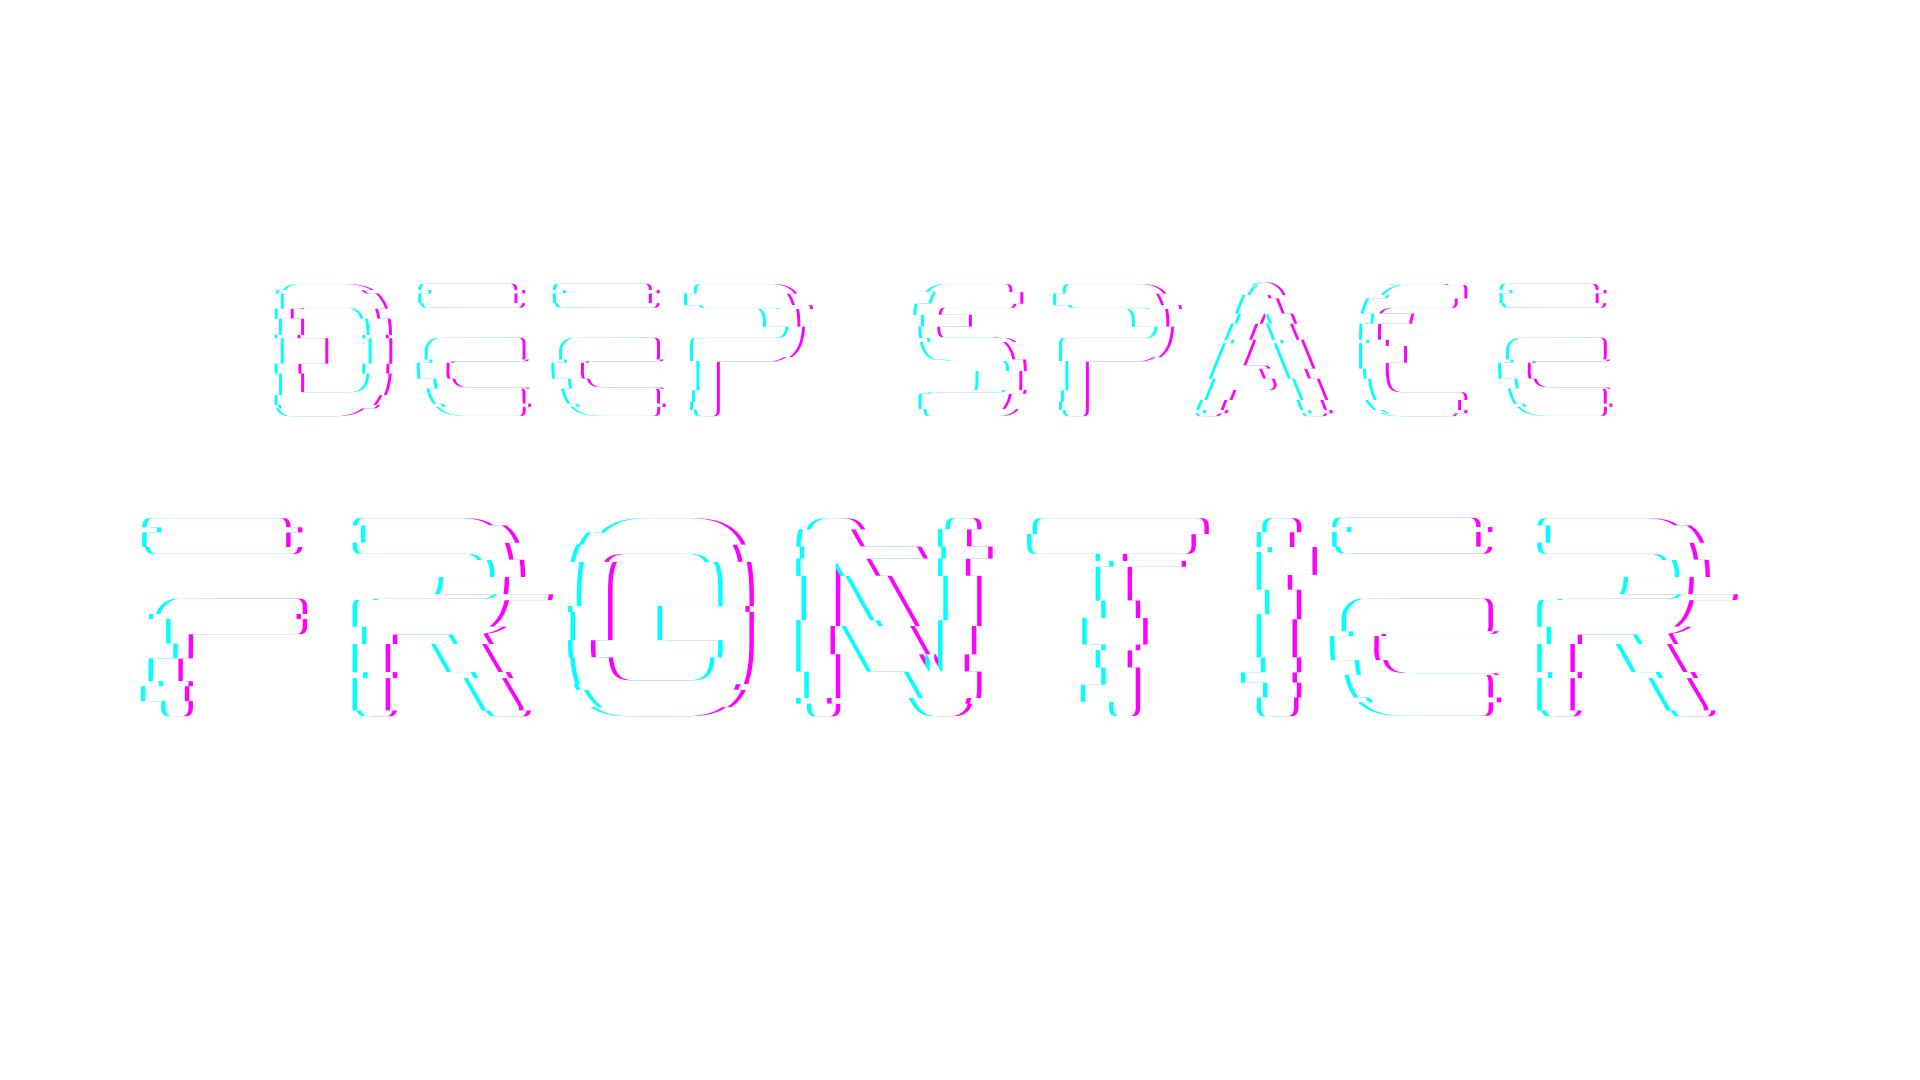 Deep Space Frontier